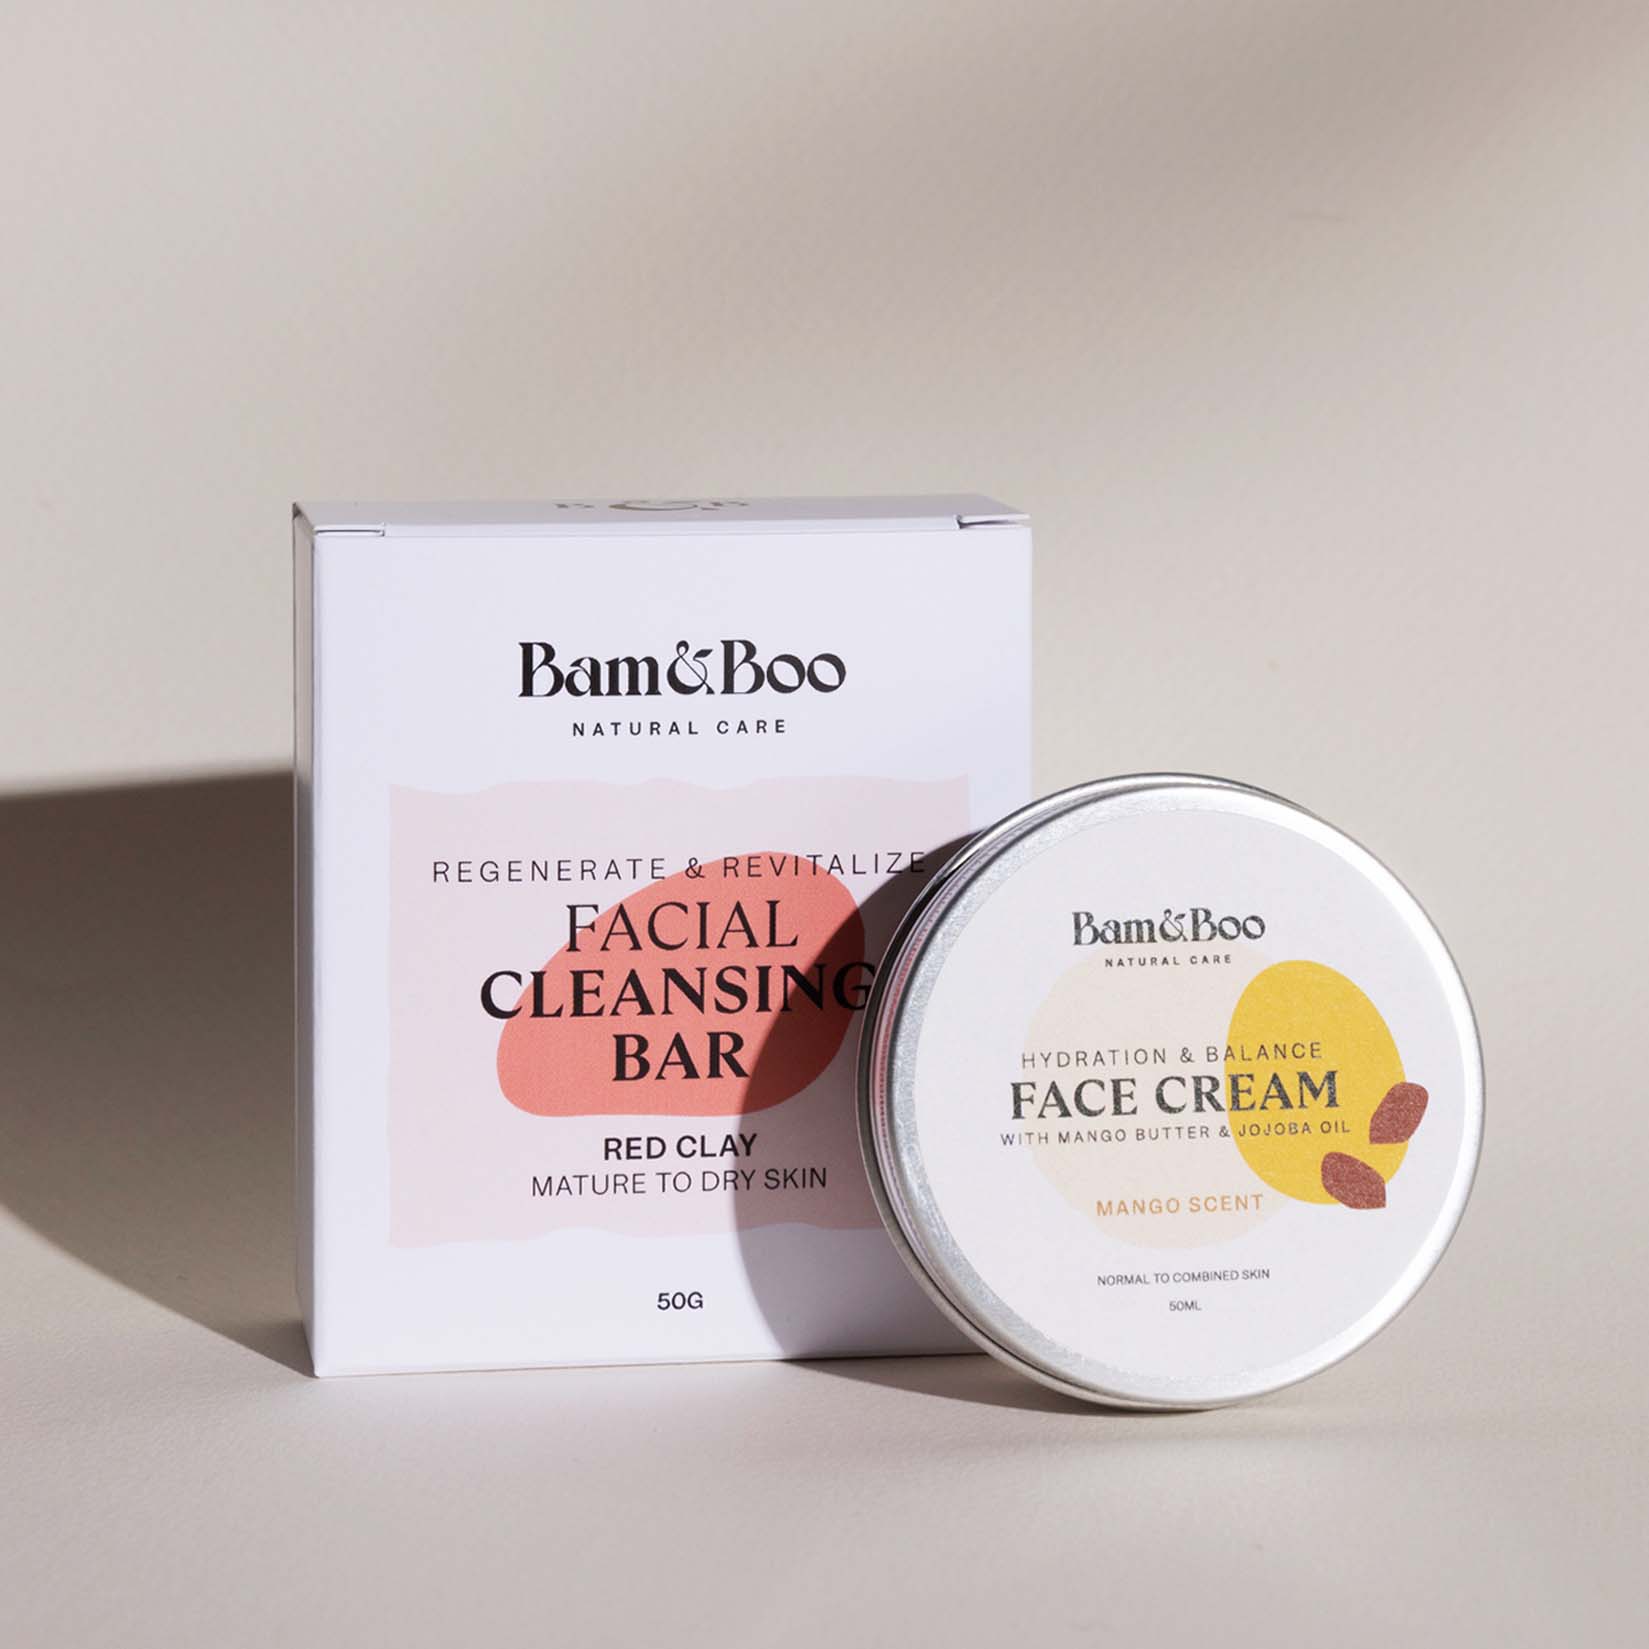 KIT | Beauty Fatale - Crema facial y barra limpiadora facial - Bam&Boo - Eco-friendly, vegan, cuidado personal y bucal sostenible